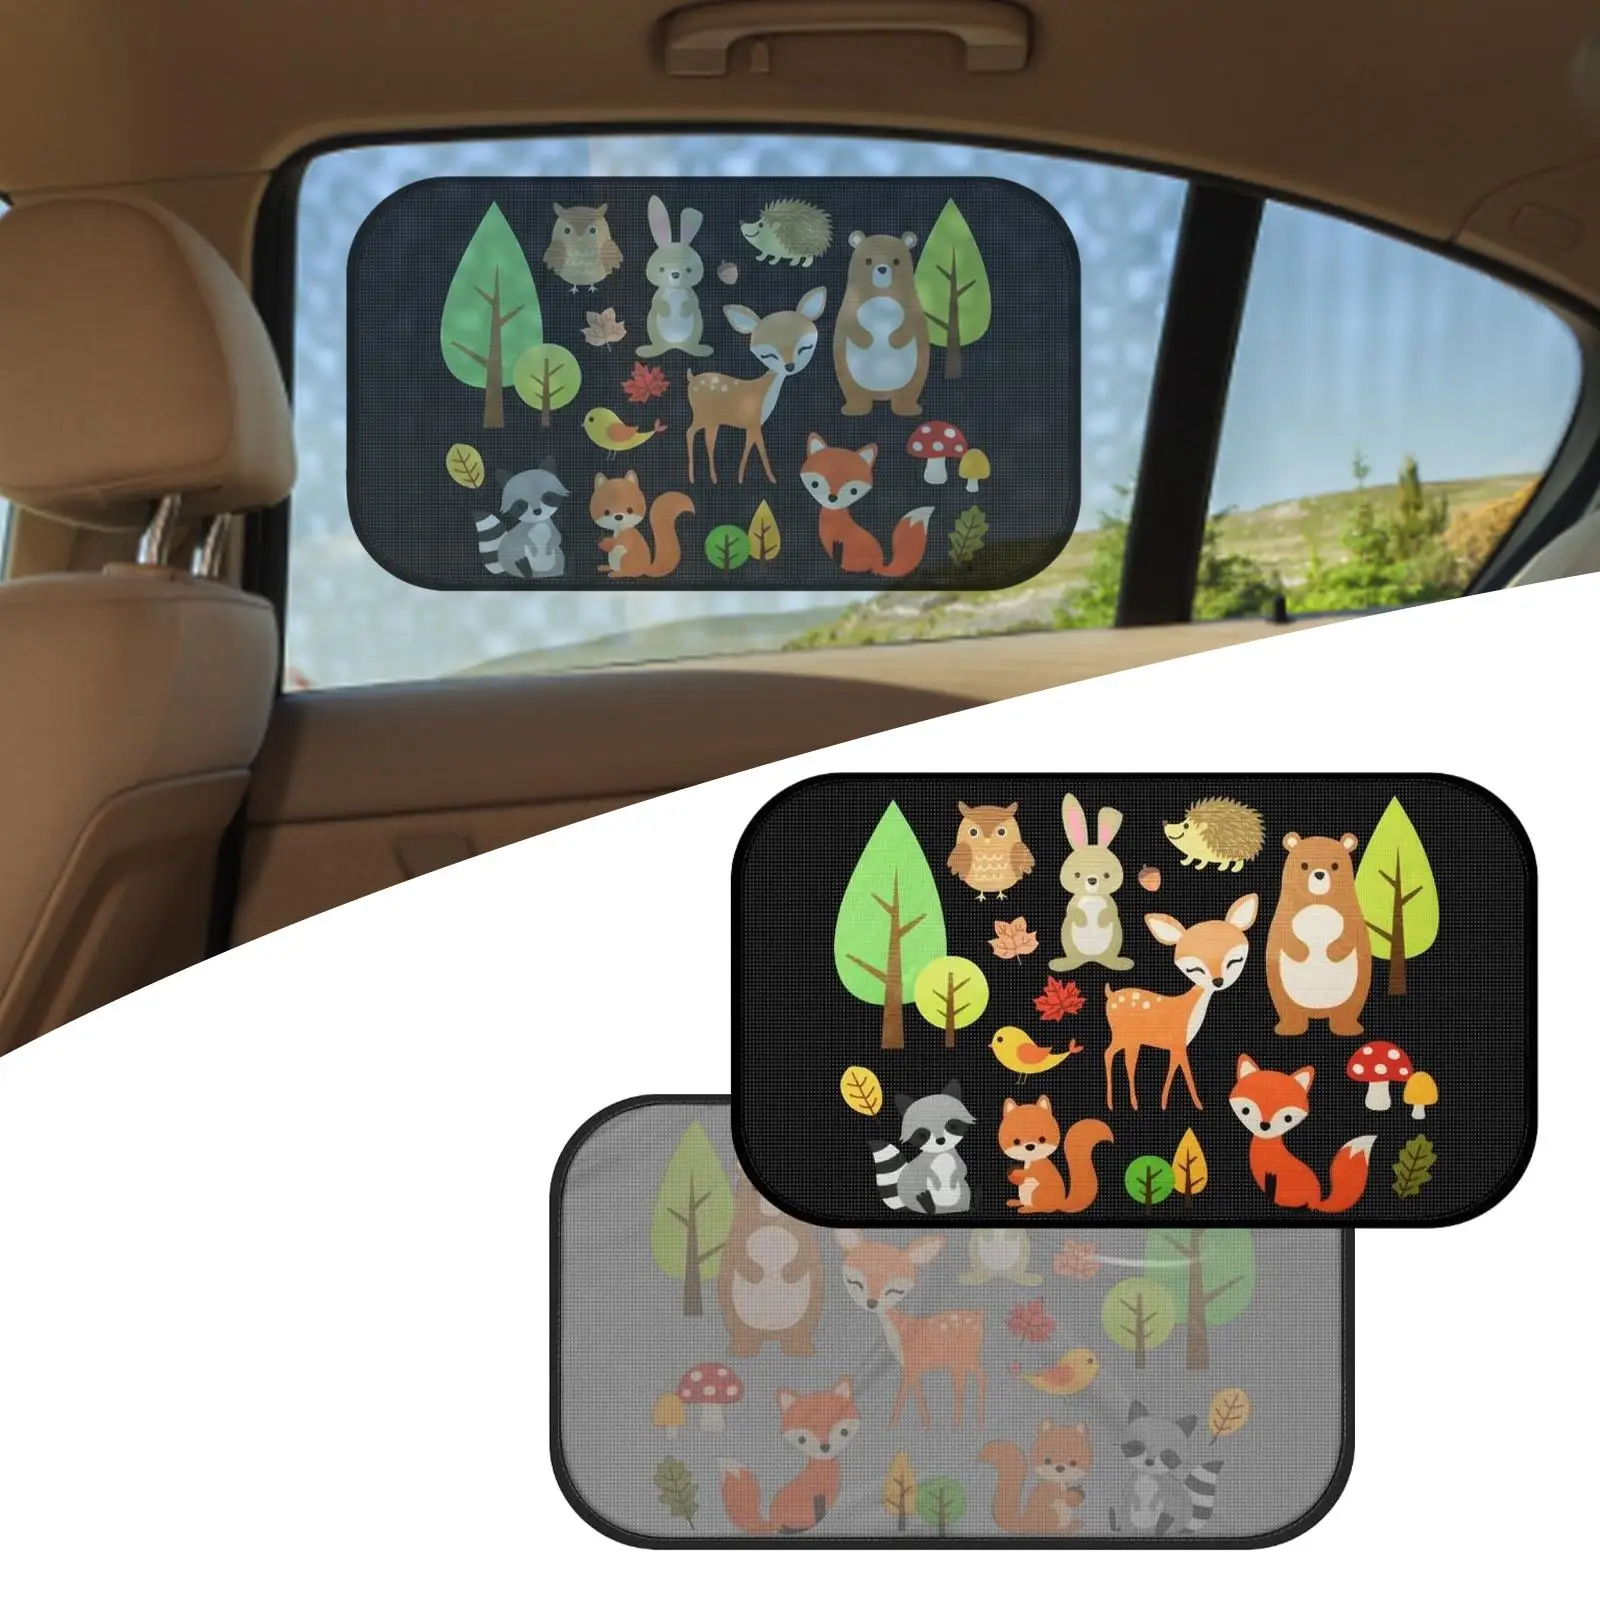 2x Car Window Sun Shades Fit Car Side and Rear Windows Block Sunlight Sun Protection Sun Shield Protector for Kids